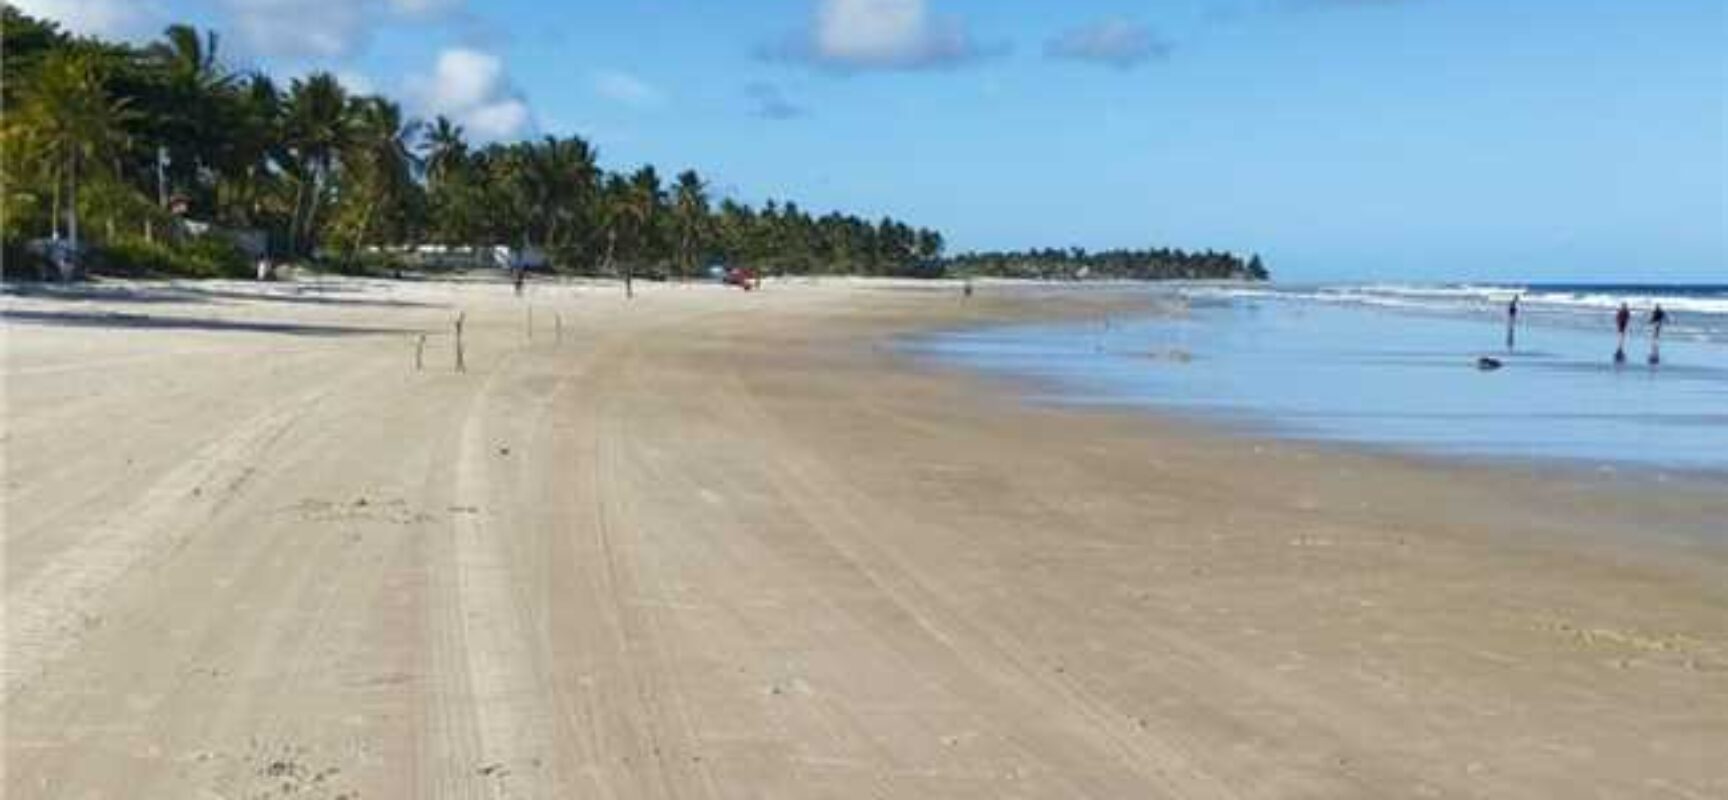 Prefeitura de Ilhéus realiza mutirão e intensifica limpeza de praias para retirada de baronesas